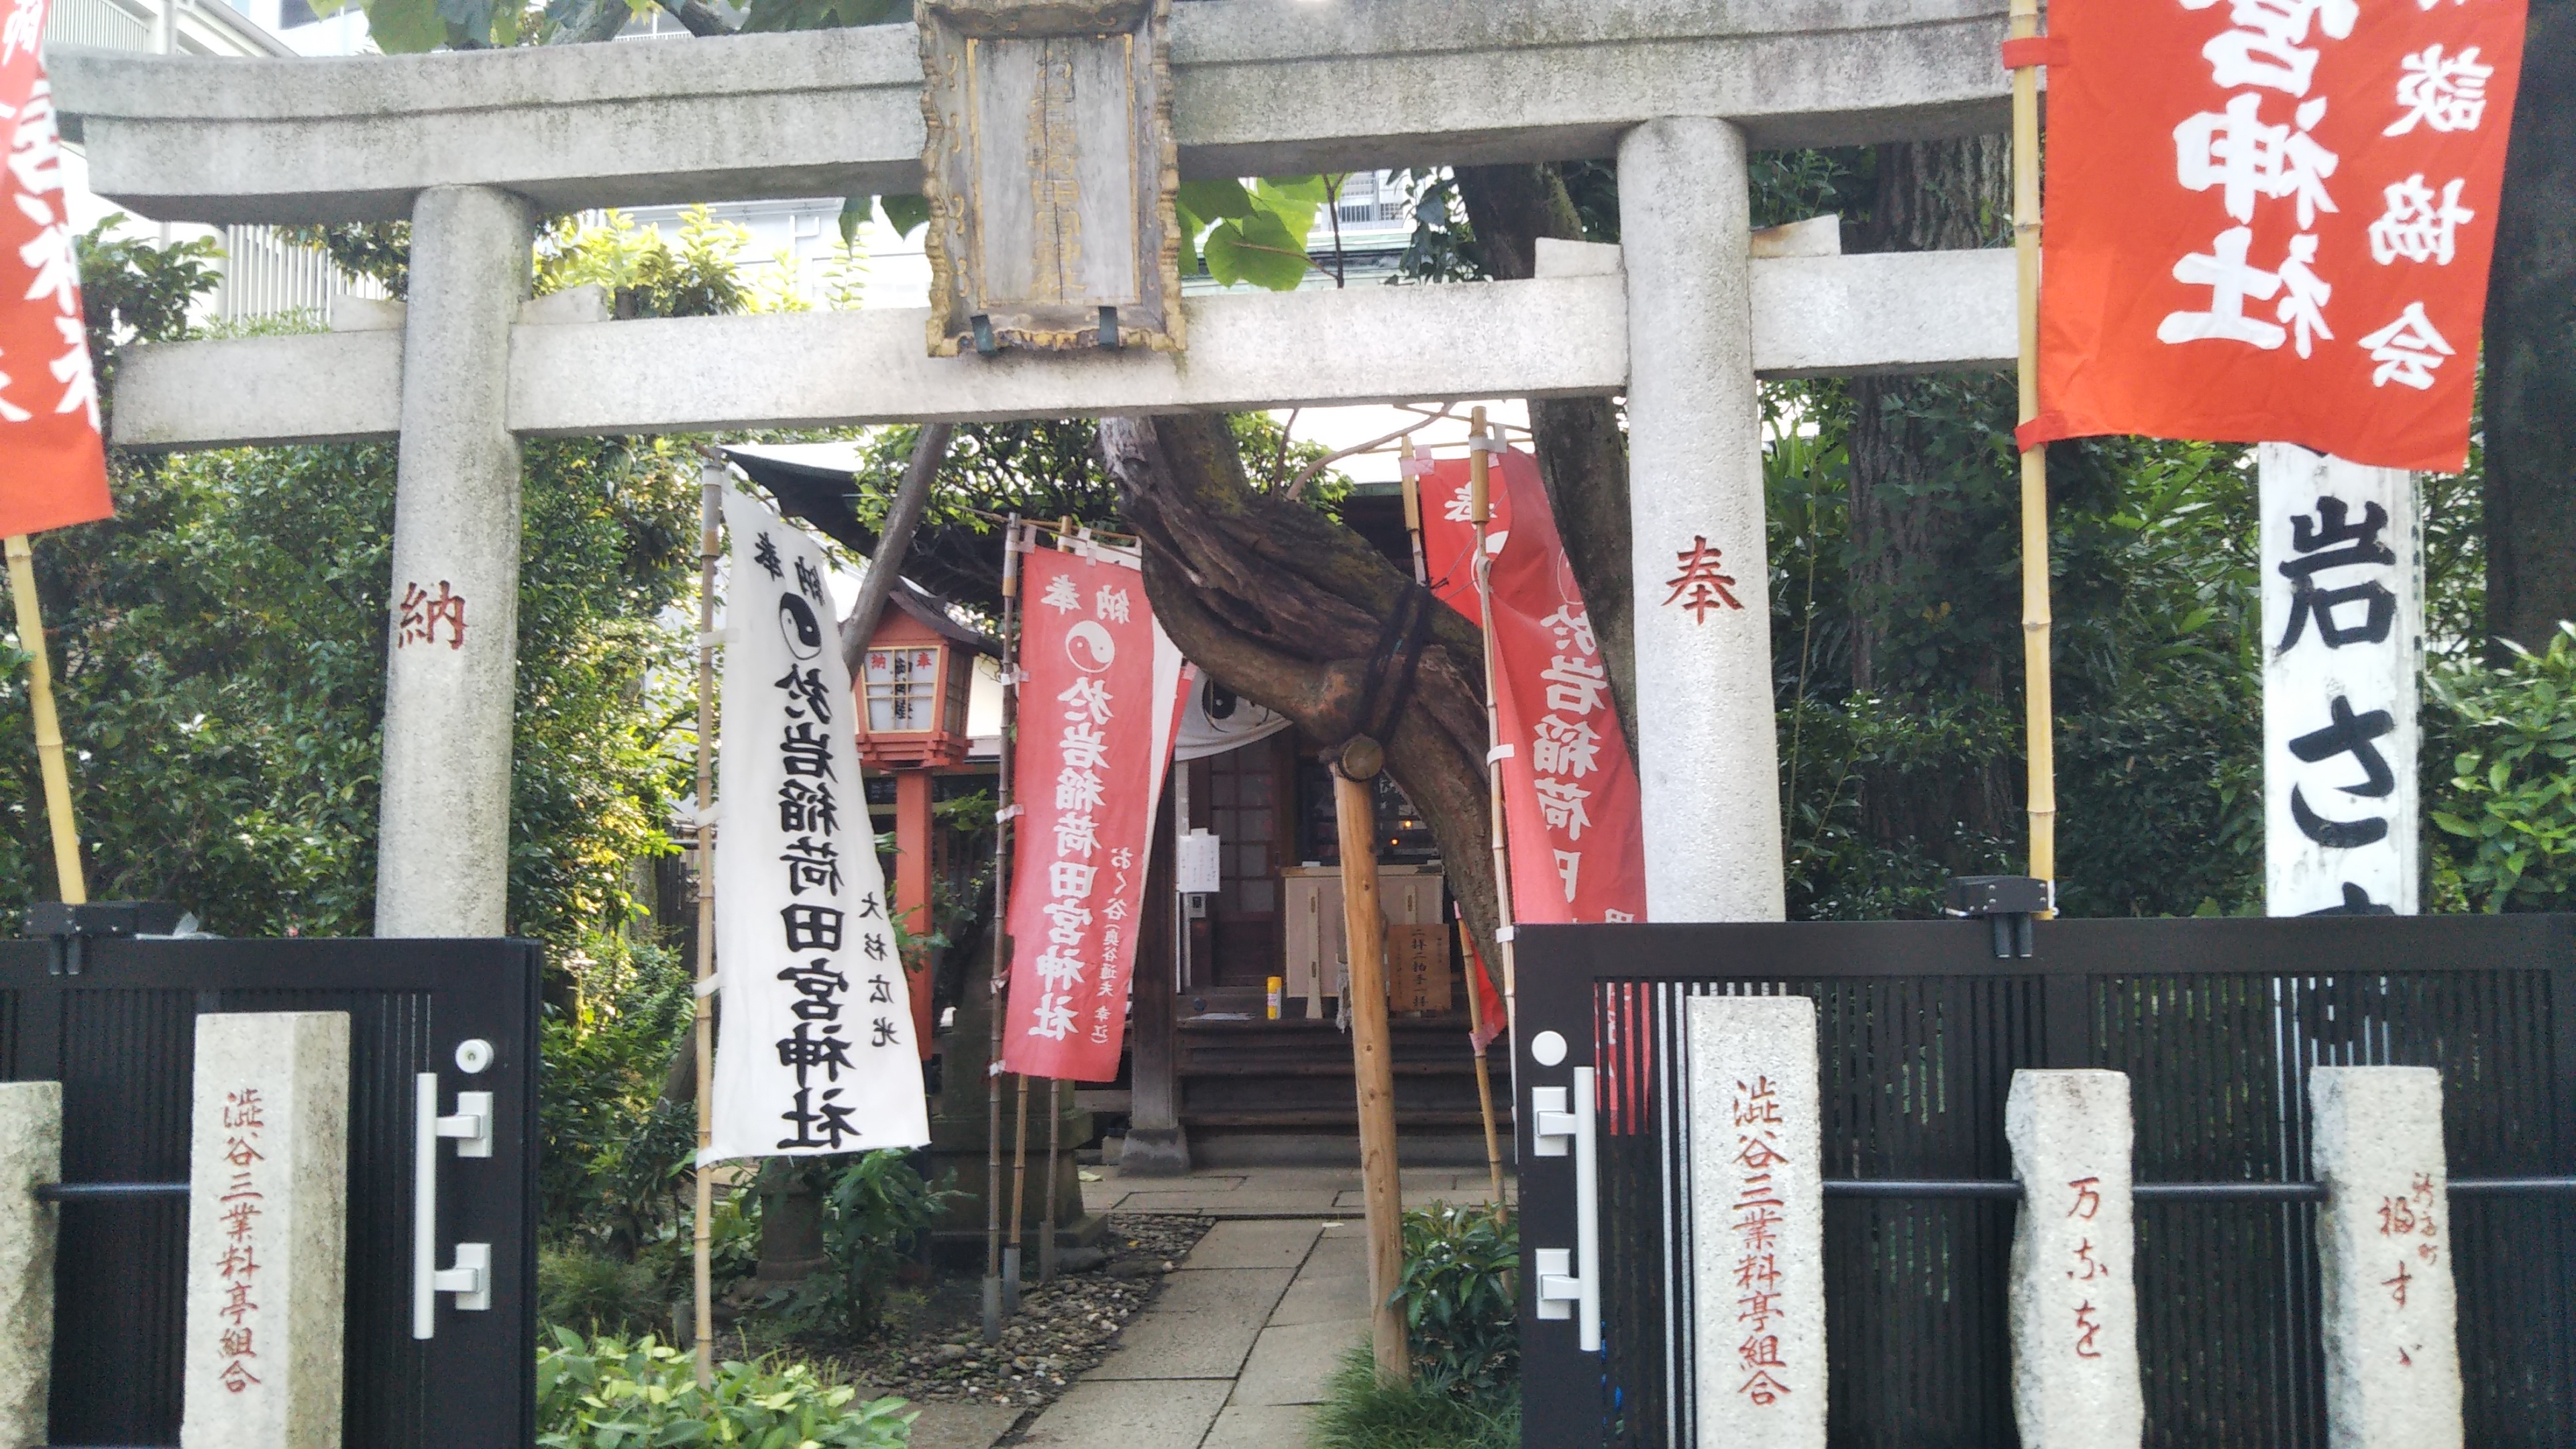 夏の風物詩 四谷怪談 をめぐる江戸の小旅行 ブログ 三重県総合文化センター